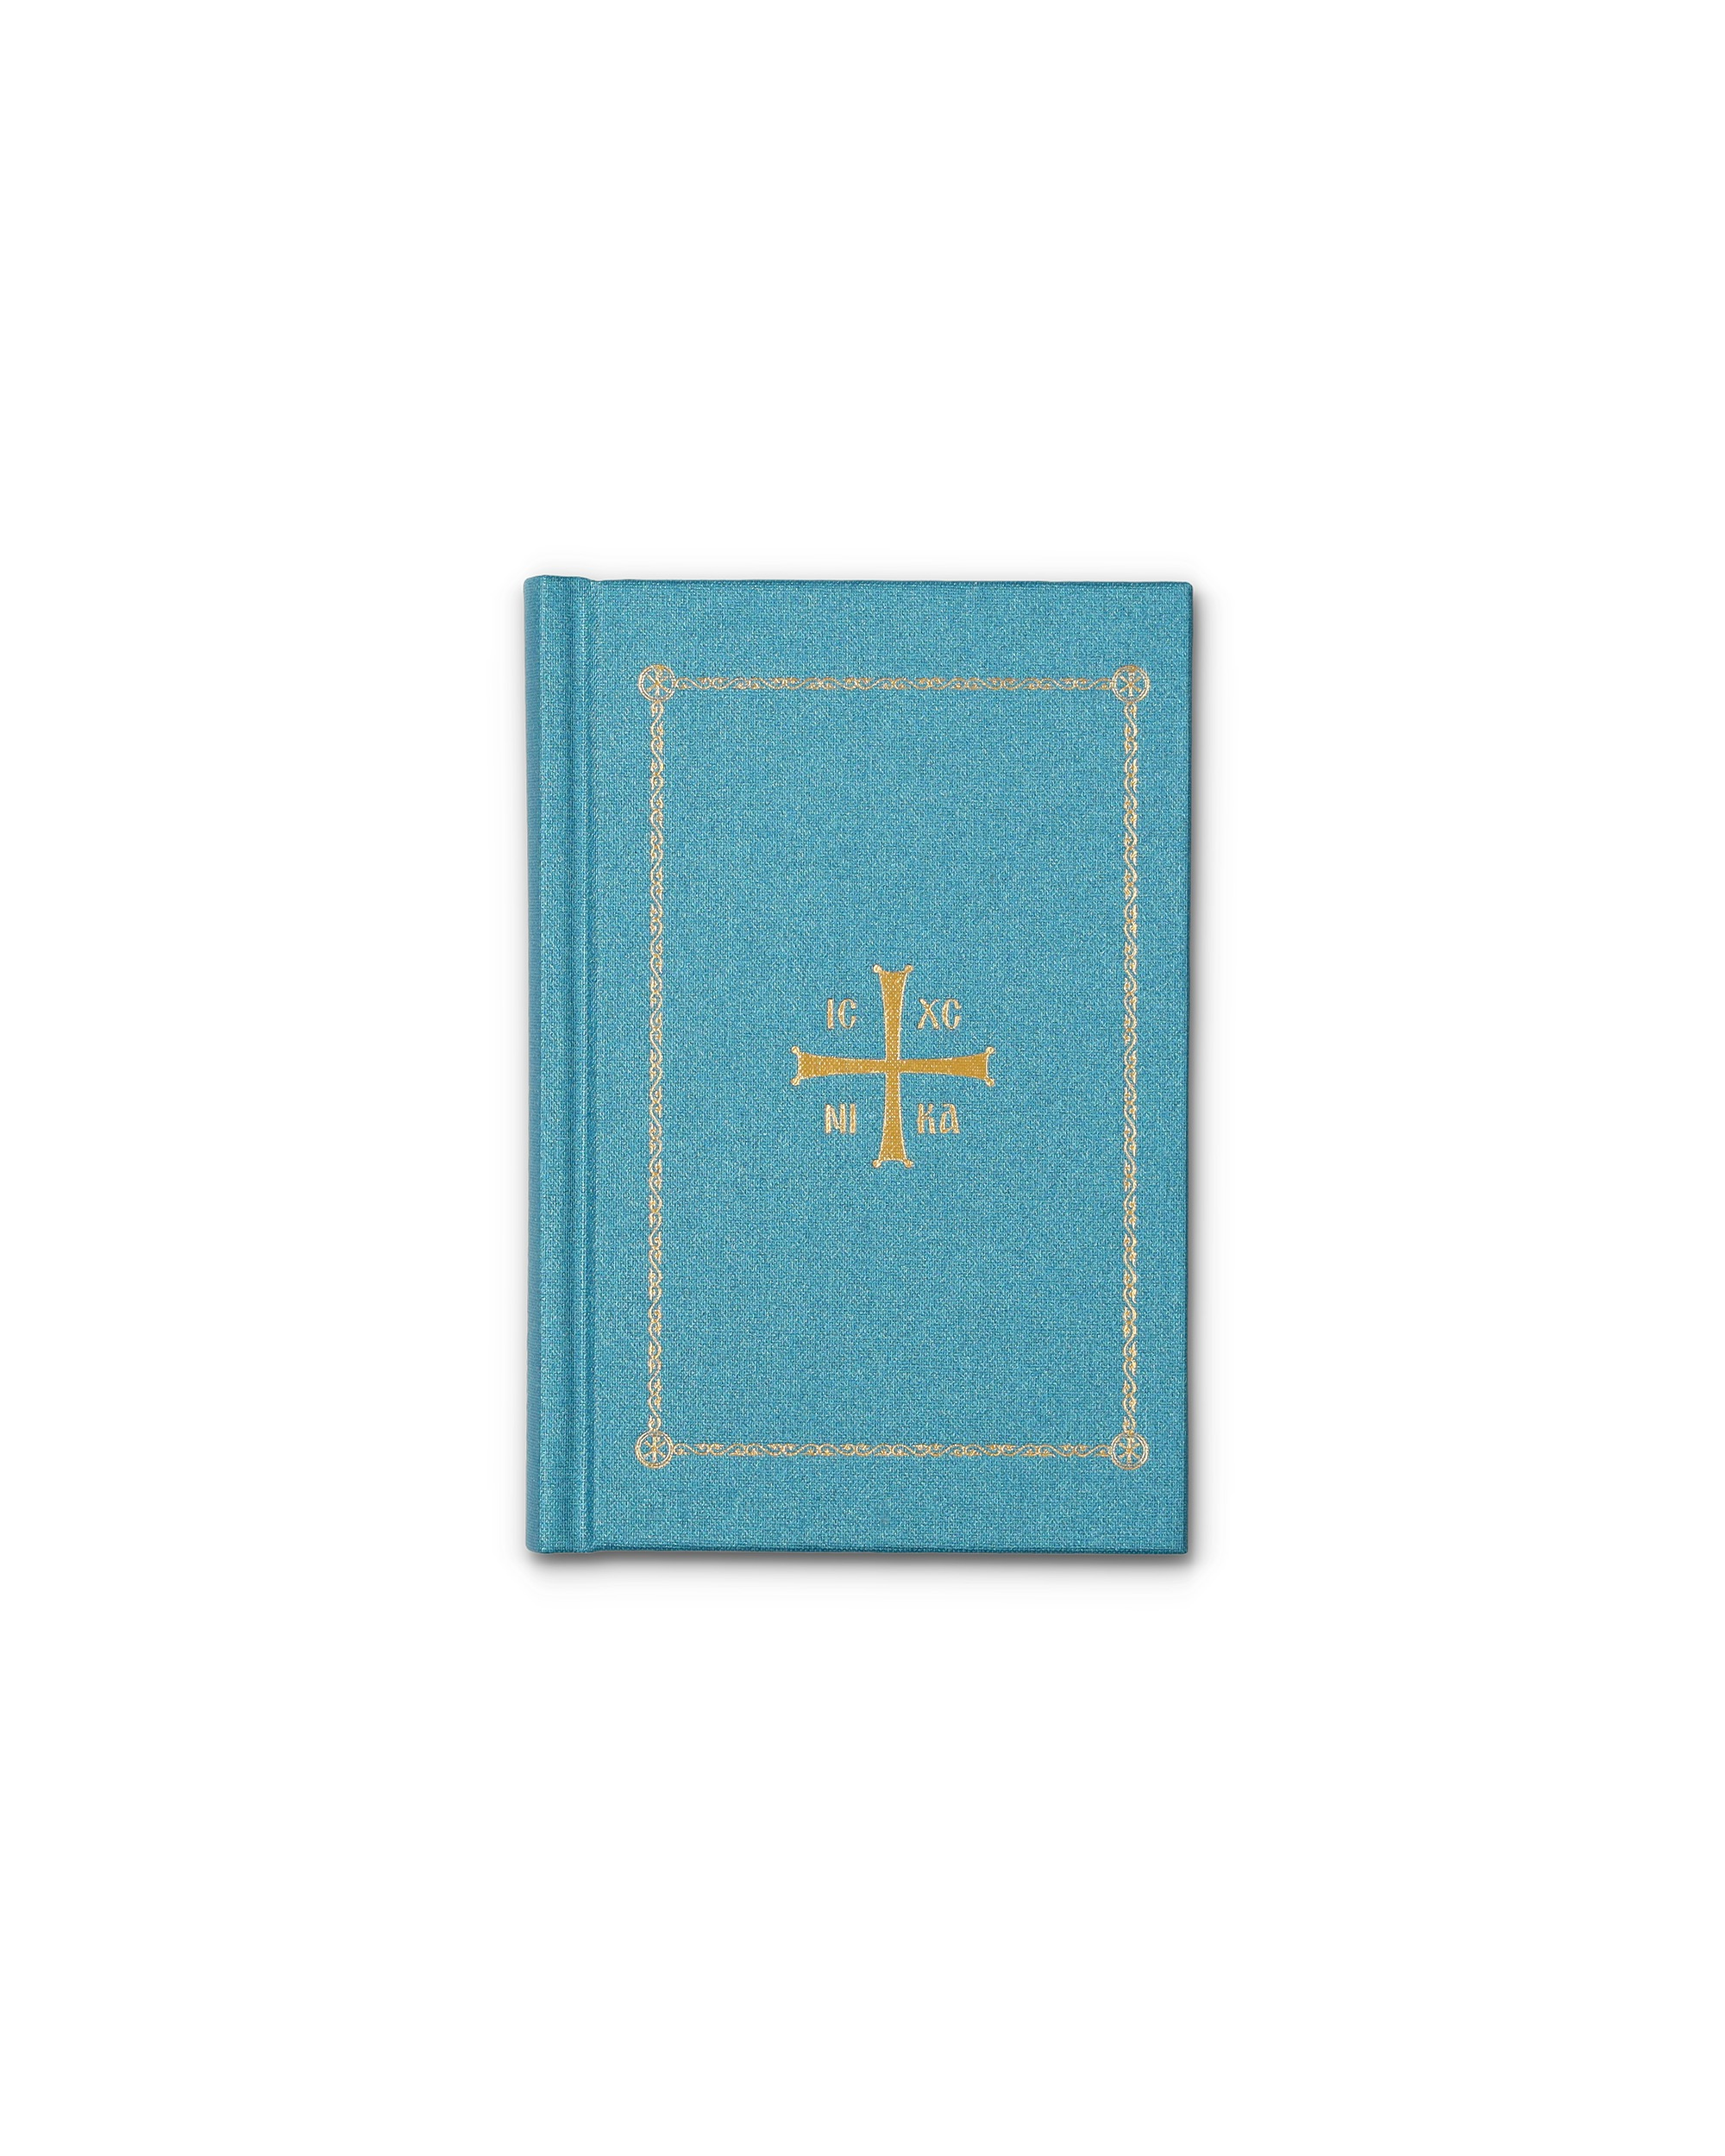 Our Original Prayer Book